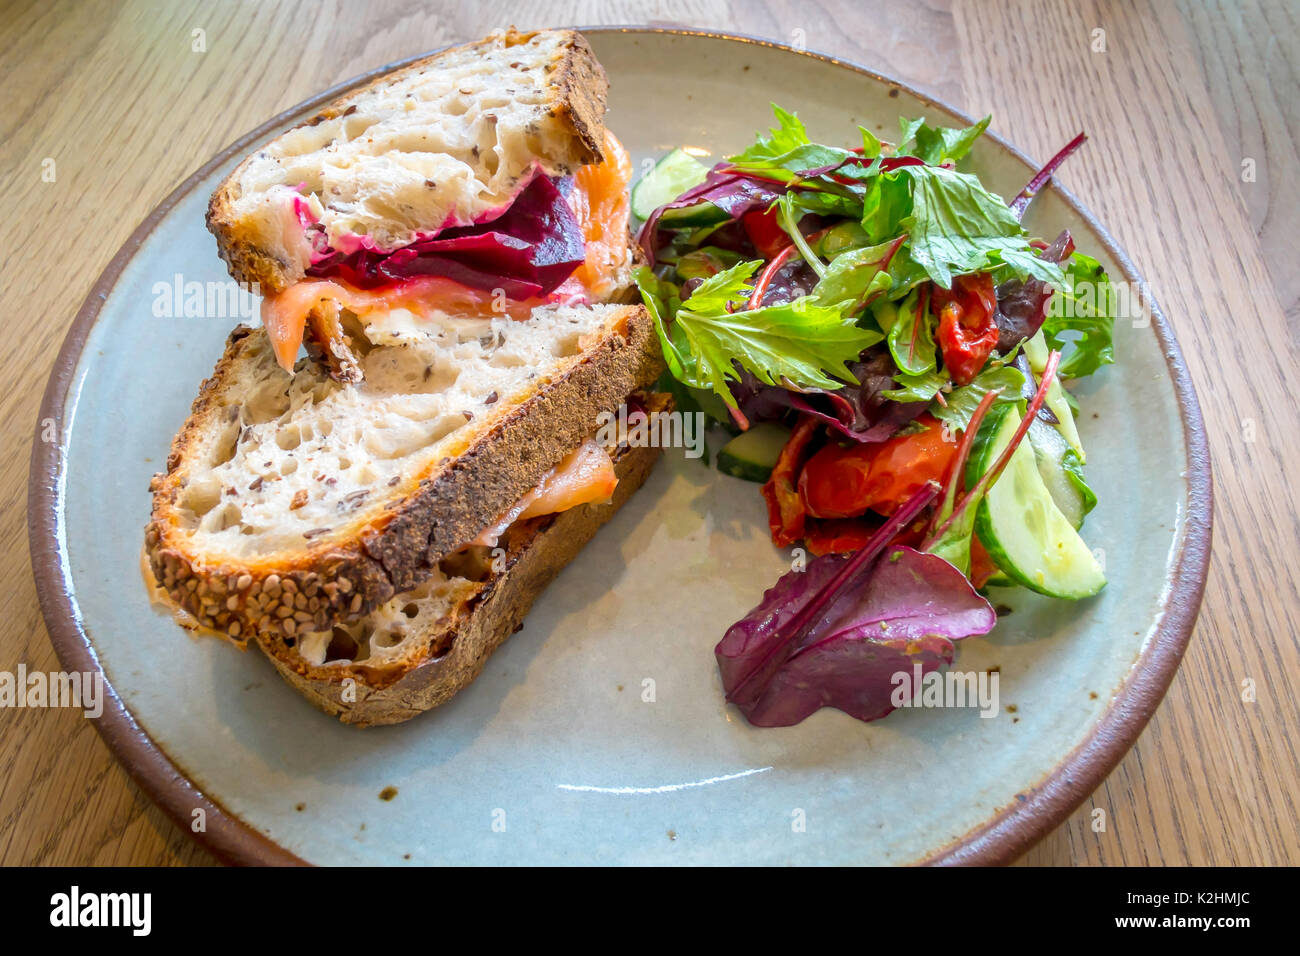 Staal sandwich au saumon fumé avec crème de betteraves fromage sur pain au levain avec salade Banque D'Images